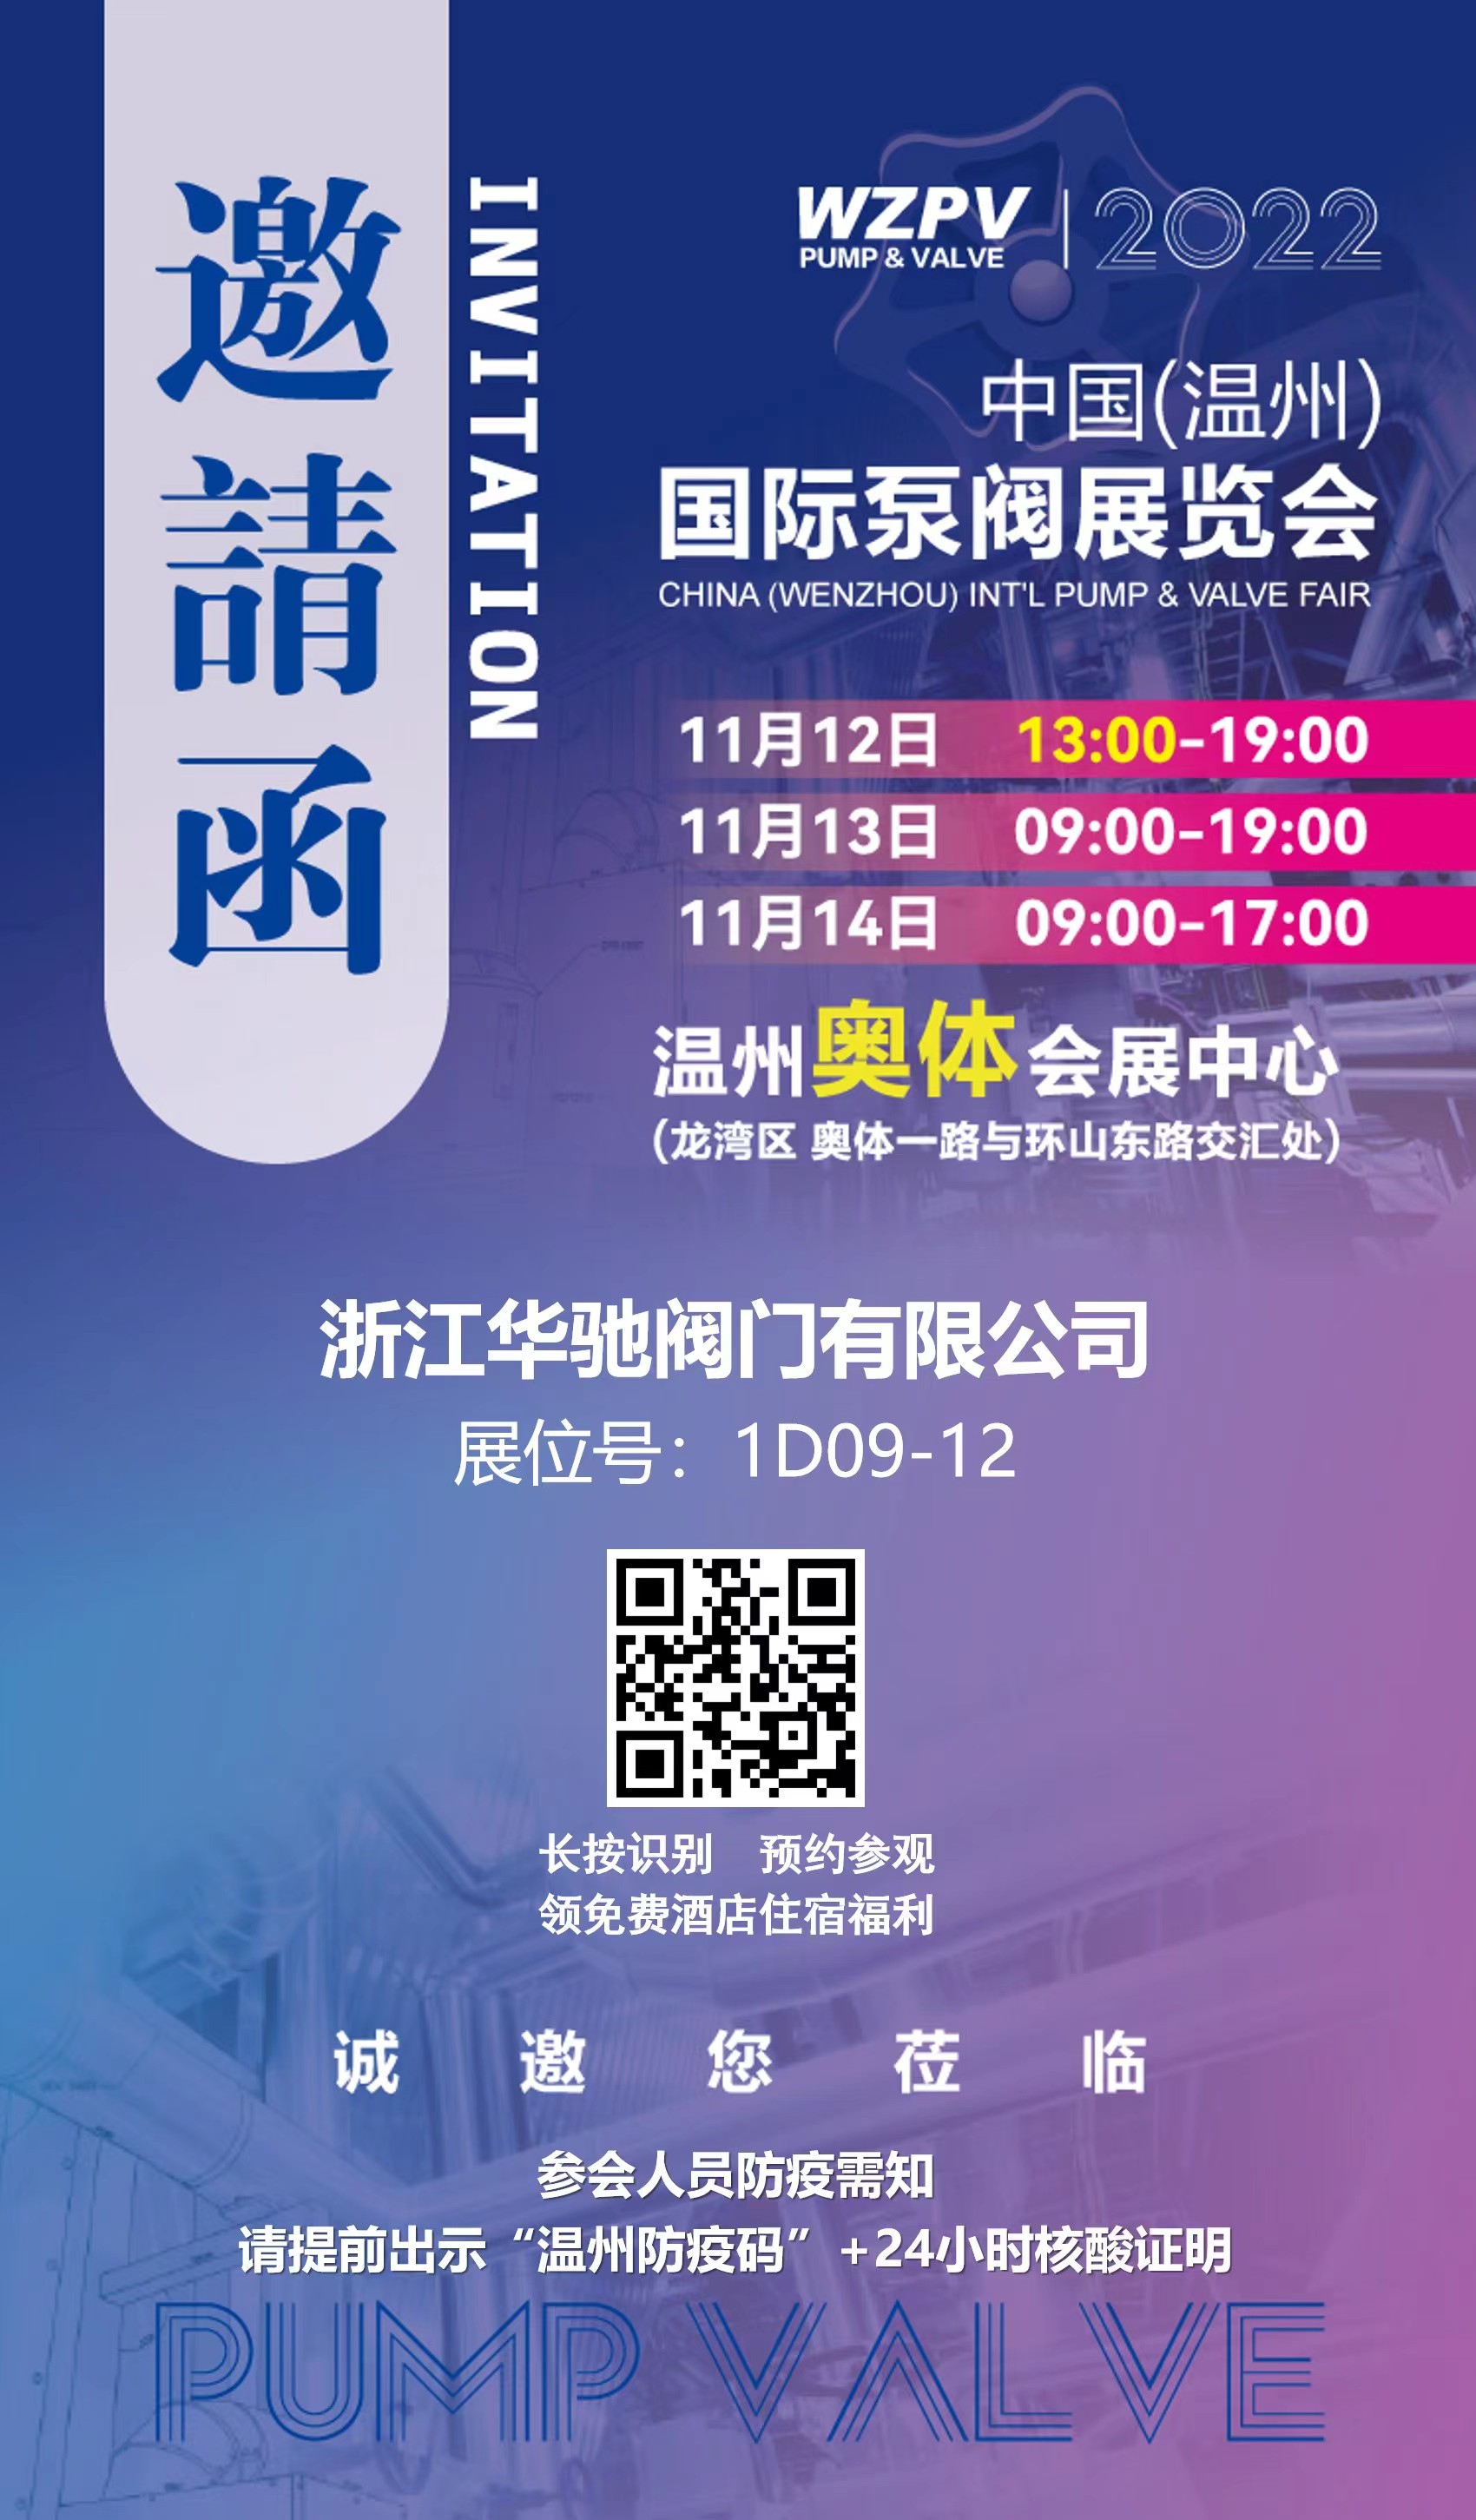 Kiinan Wenzhoun kansainvälinen pumppuventtiilinäyttely